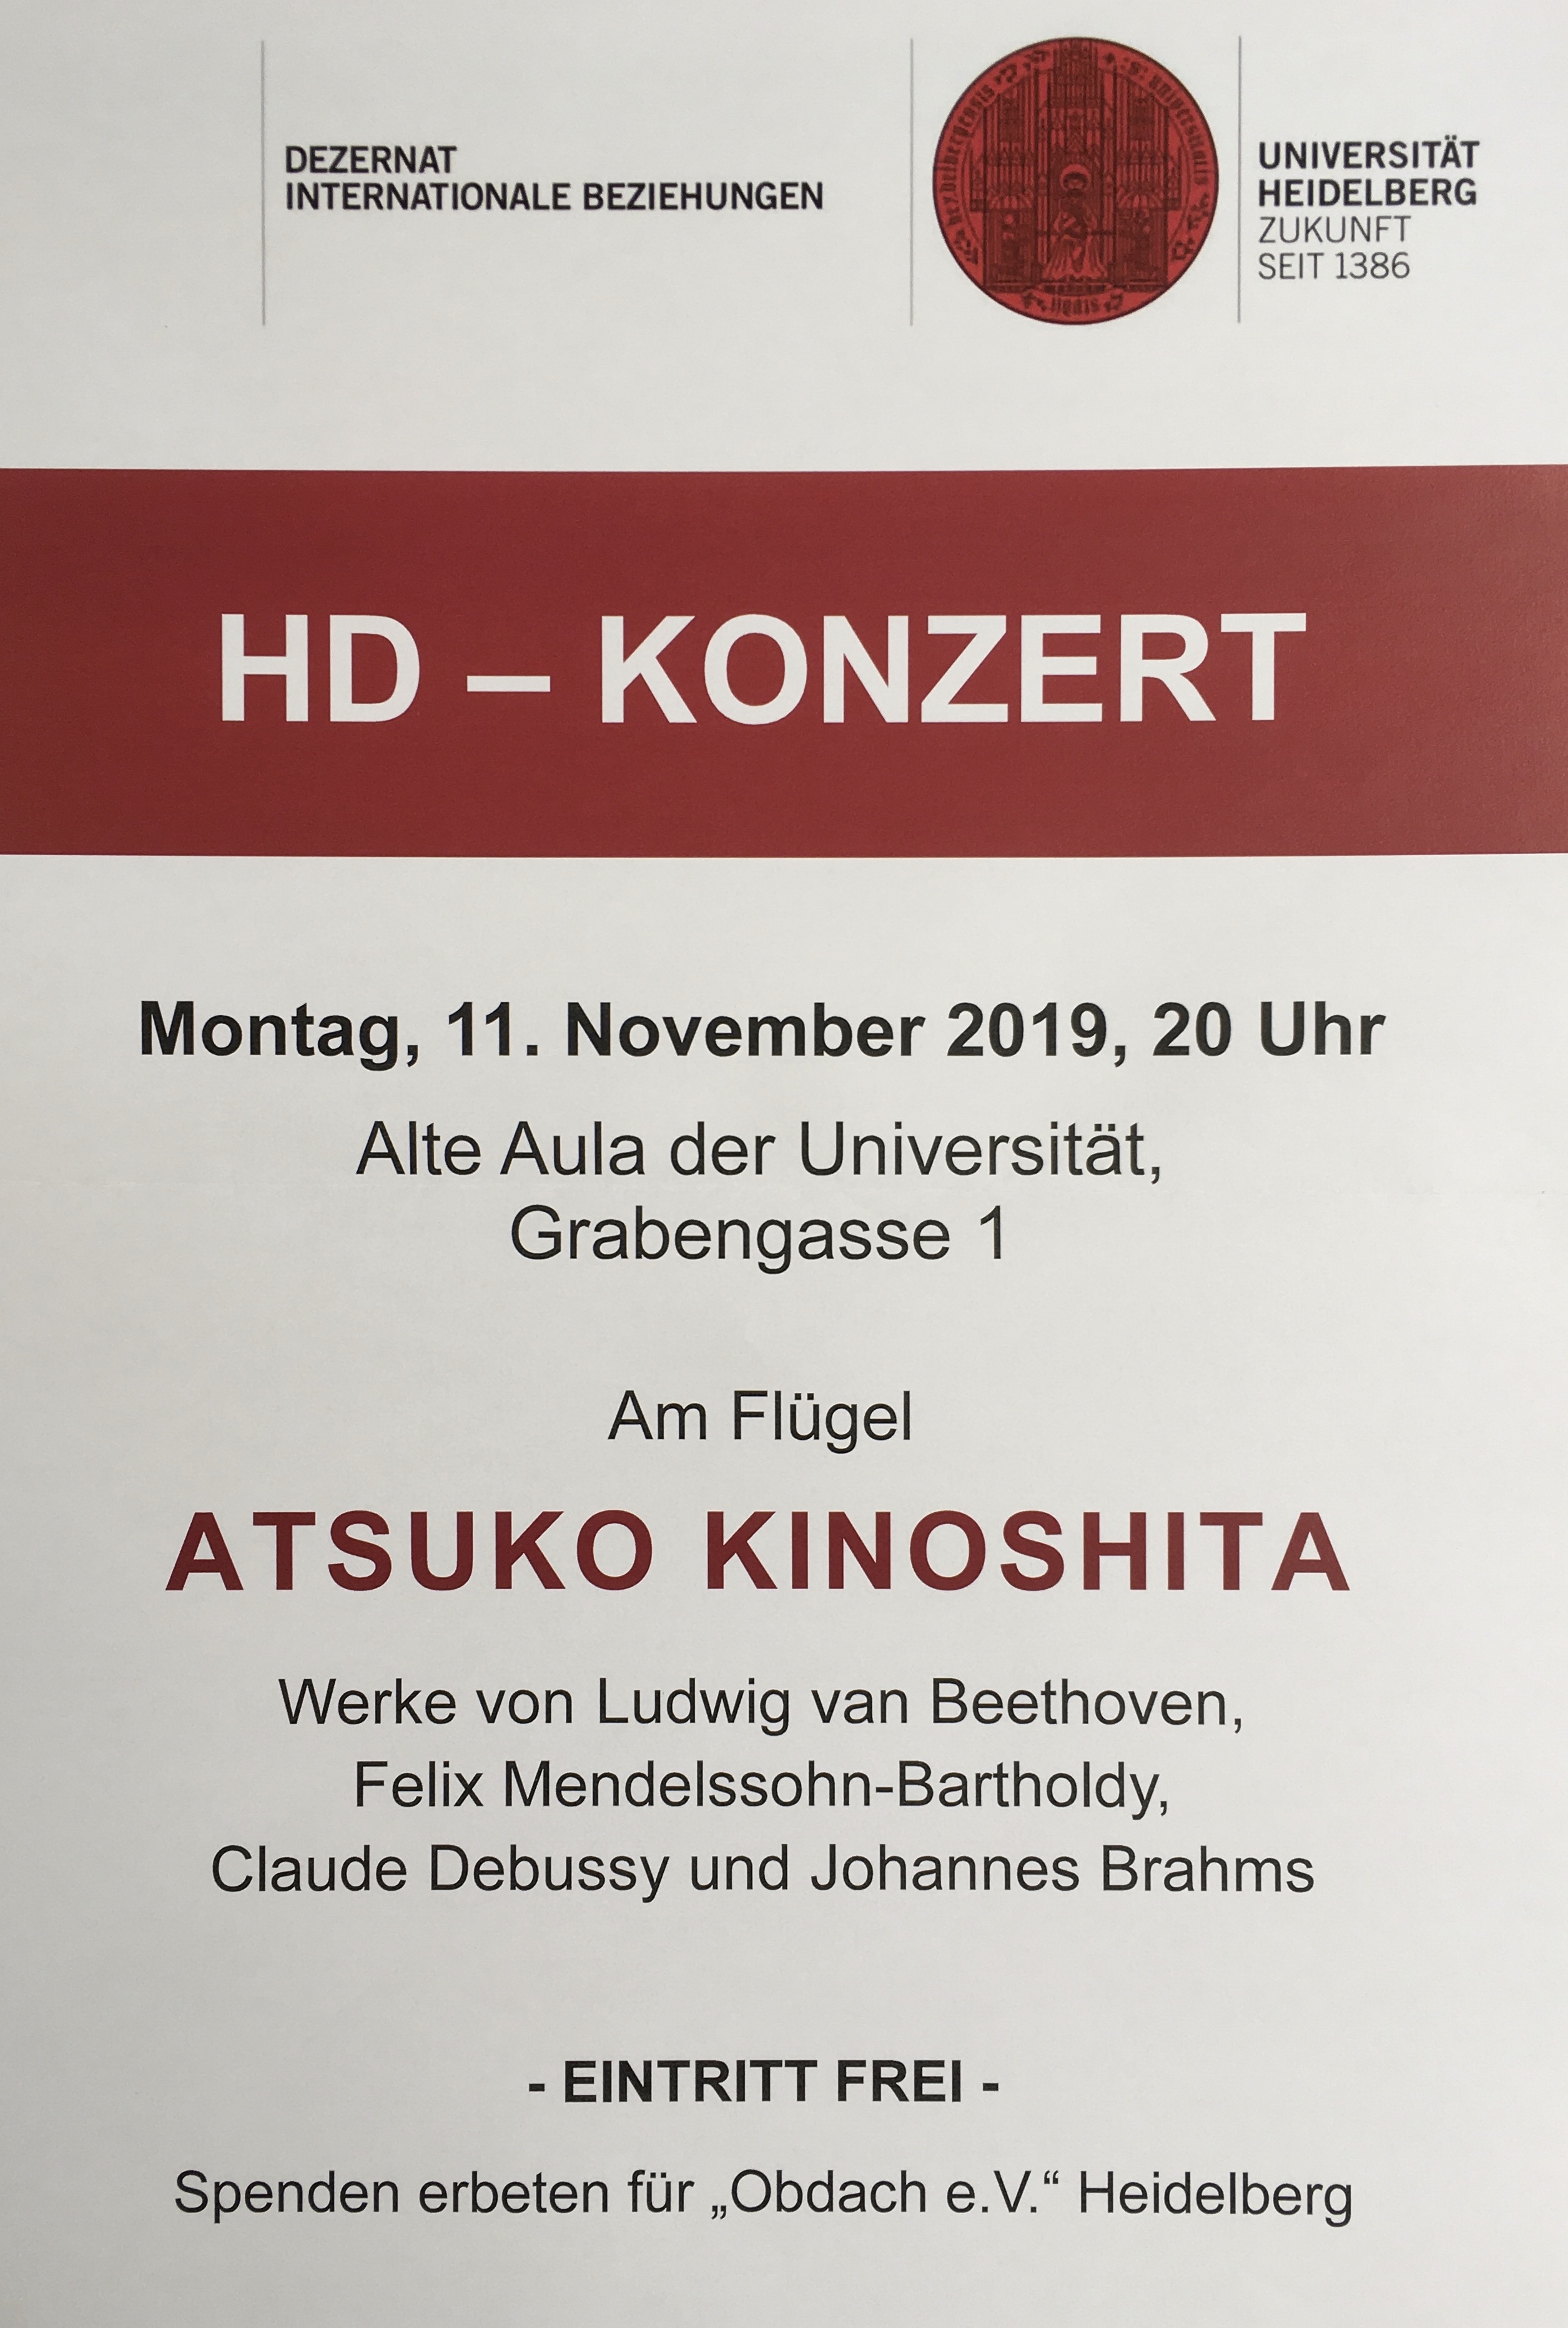 HD-Konzert am 11.11.19